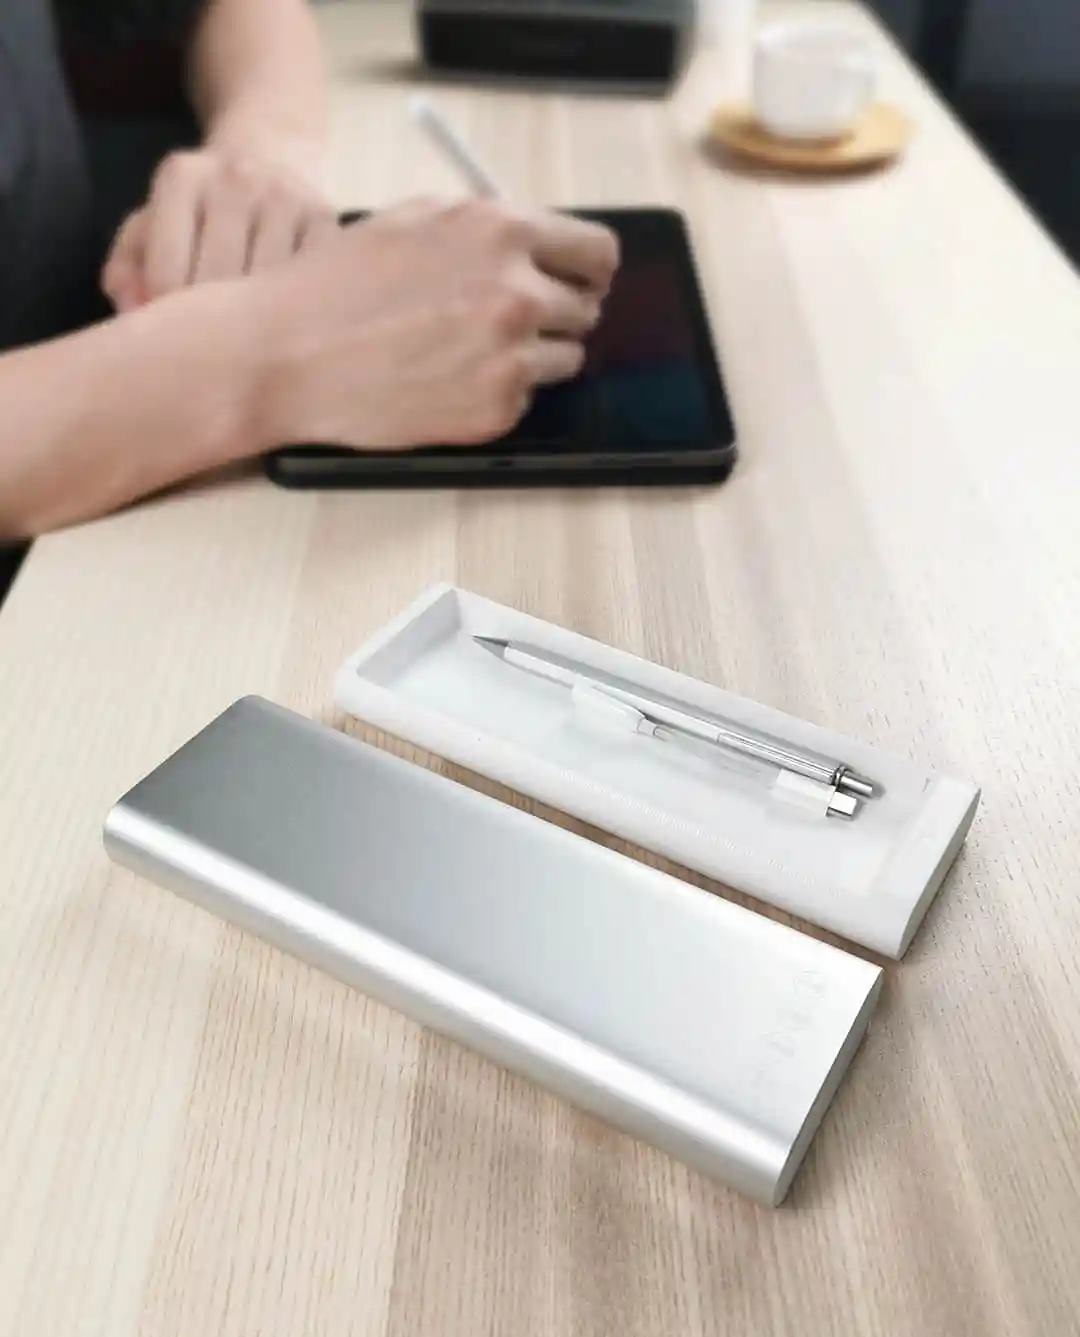 Xiaomi Mijia Youpin MIIIW металлическая канцелярская коробка портативный чехол Ручка алюминиевый корпус кнопочный переключатель для школы и офиса